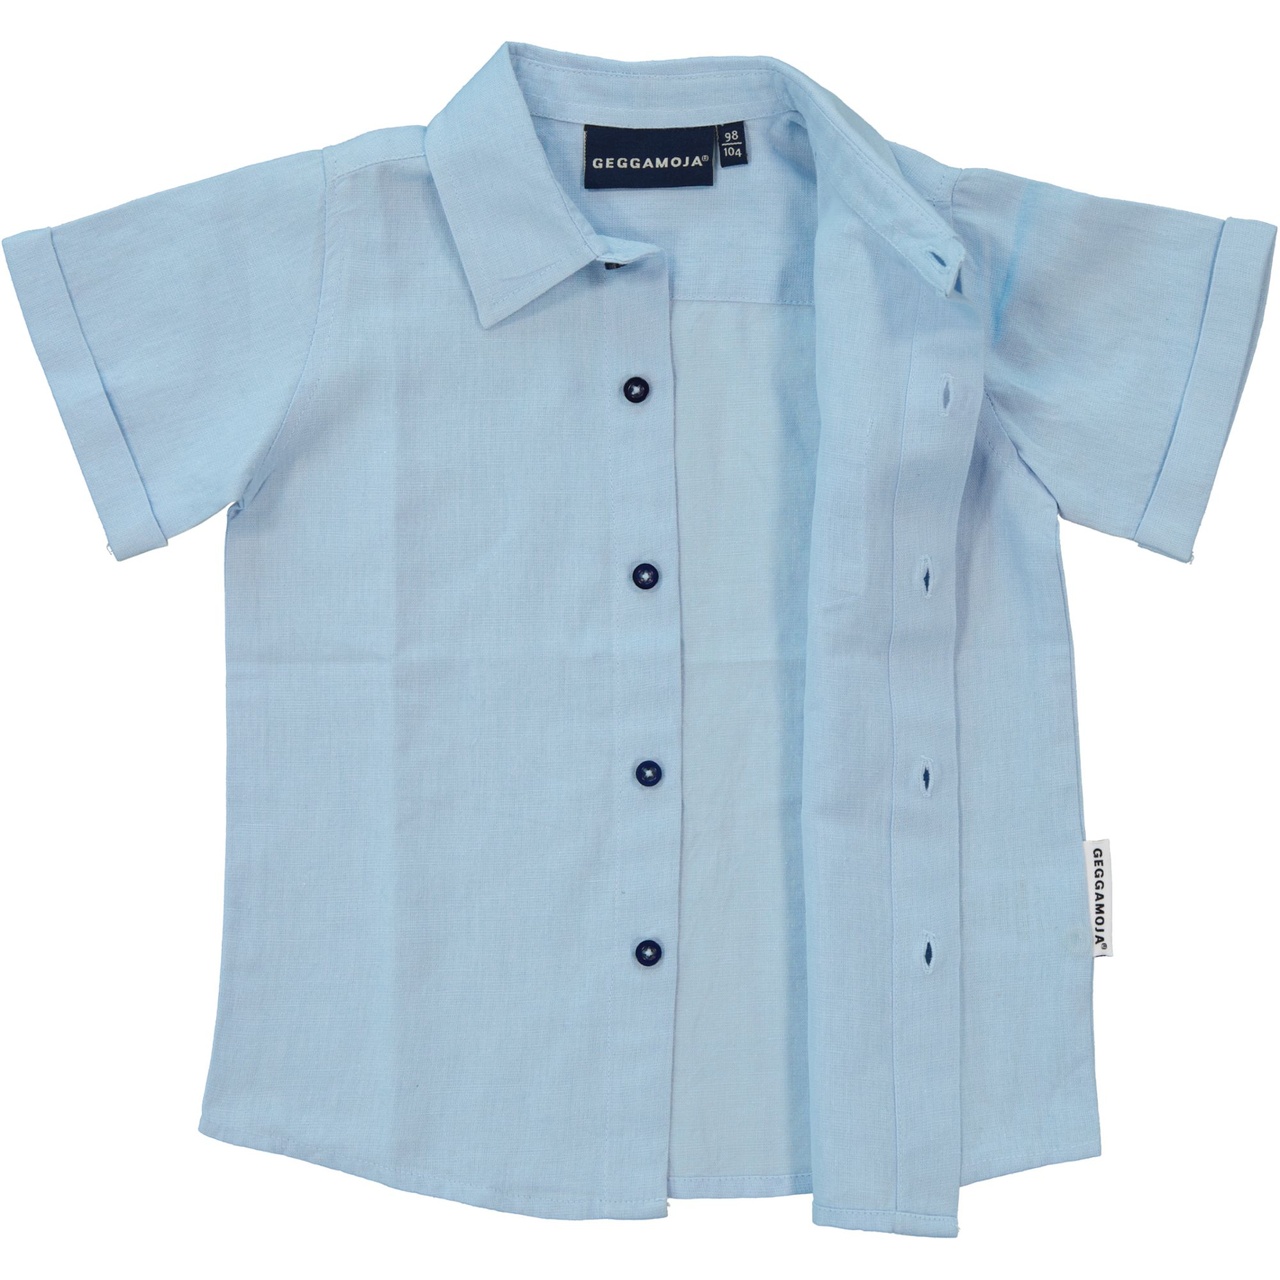 Linnen Shirt S.S Light blue 86/92